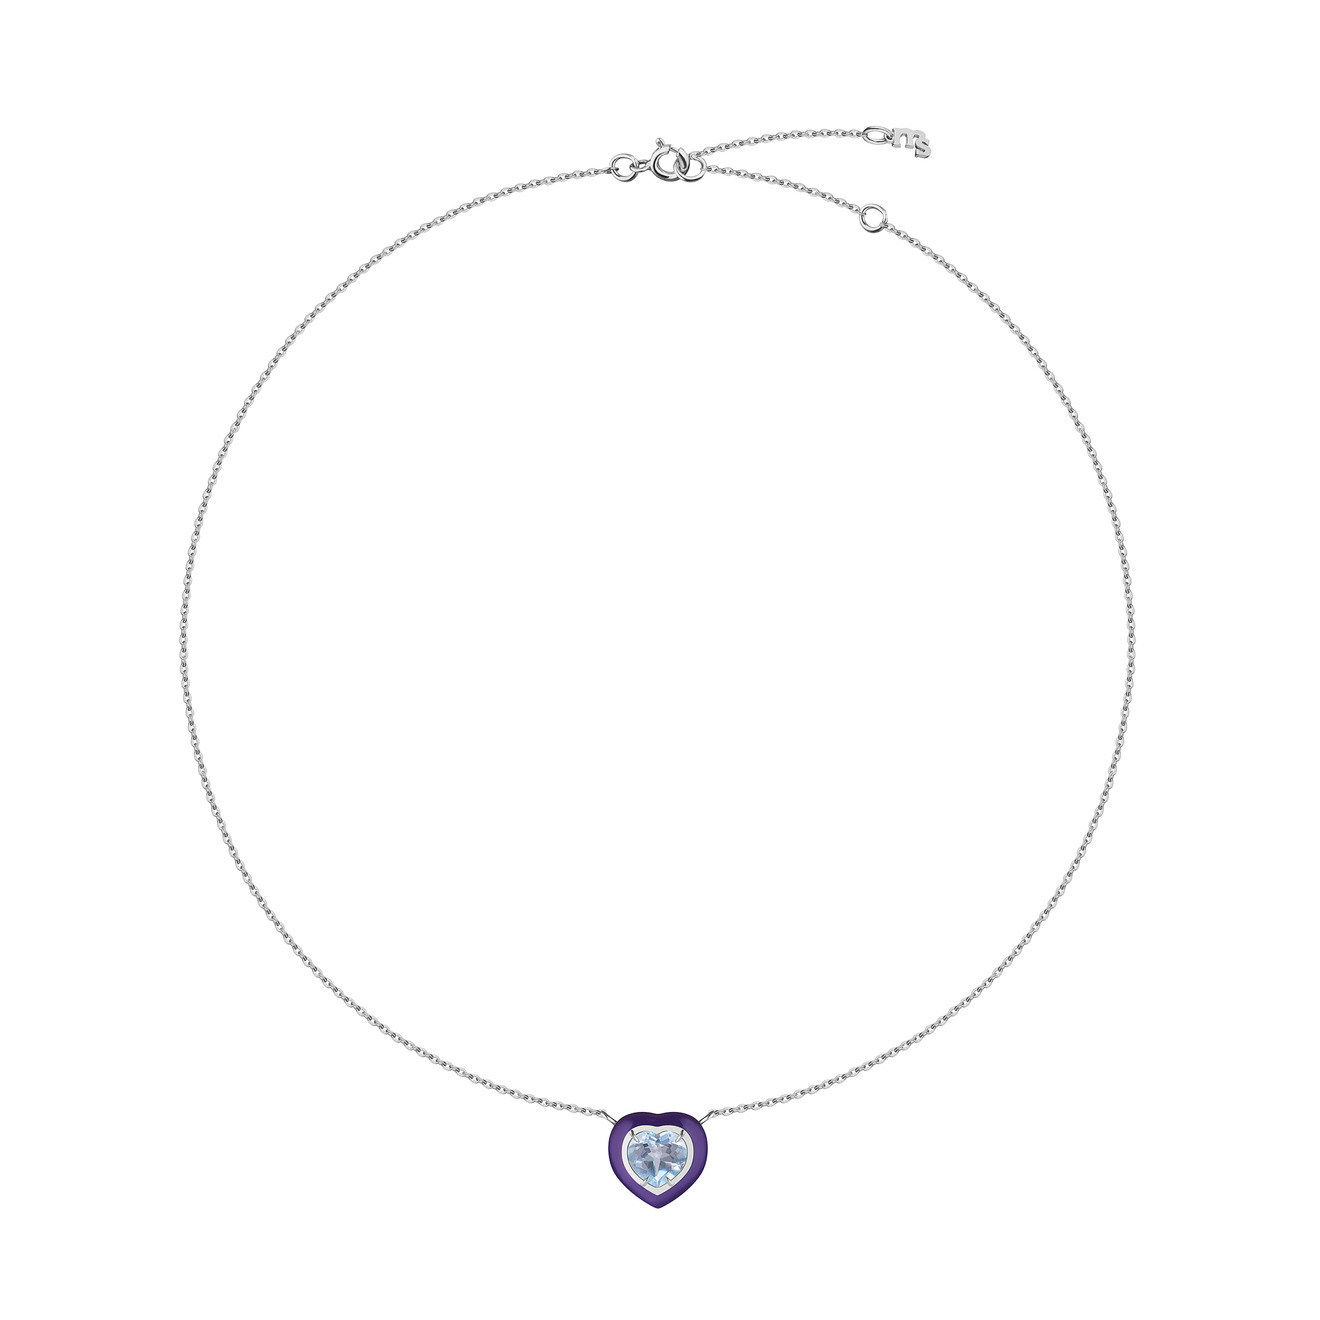 moonka позолоченные серьги кликеры из серебра с подвесками кругами с белым топазом Moonka Ожерелье из серебра с голубым топазом и фиолетовой эмалью